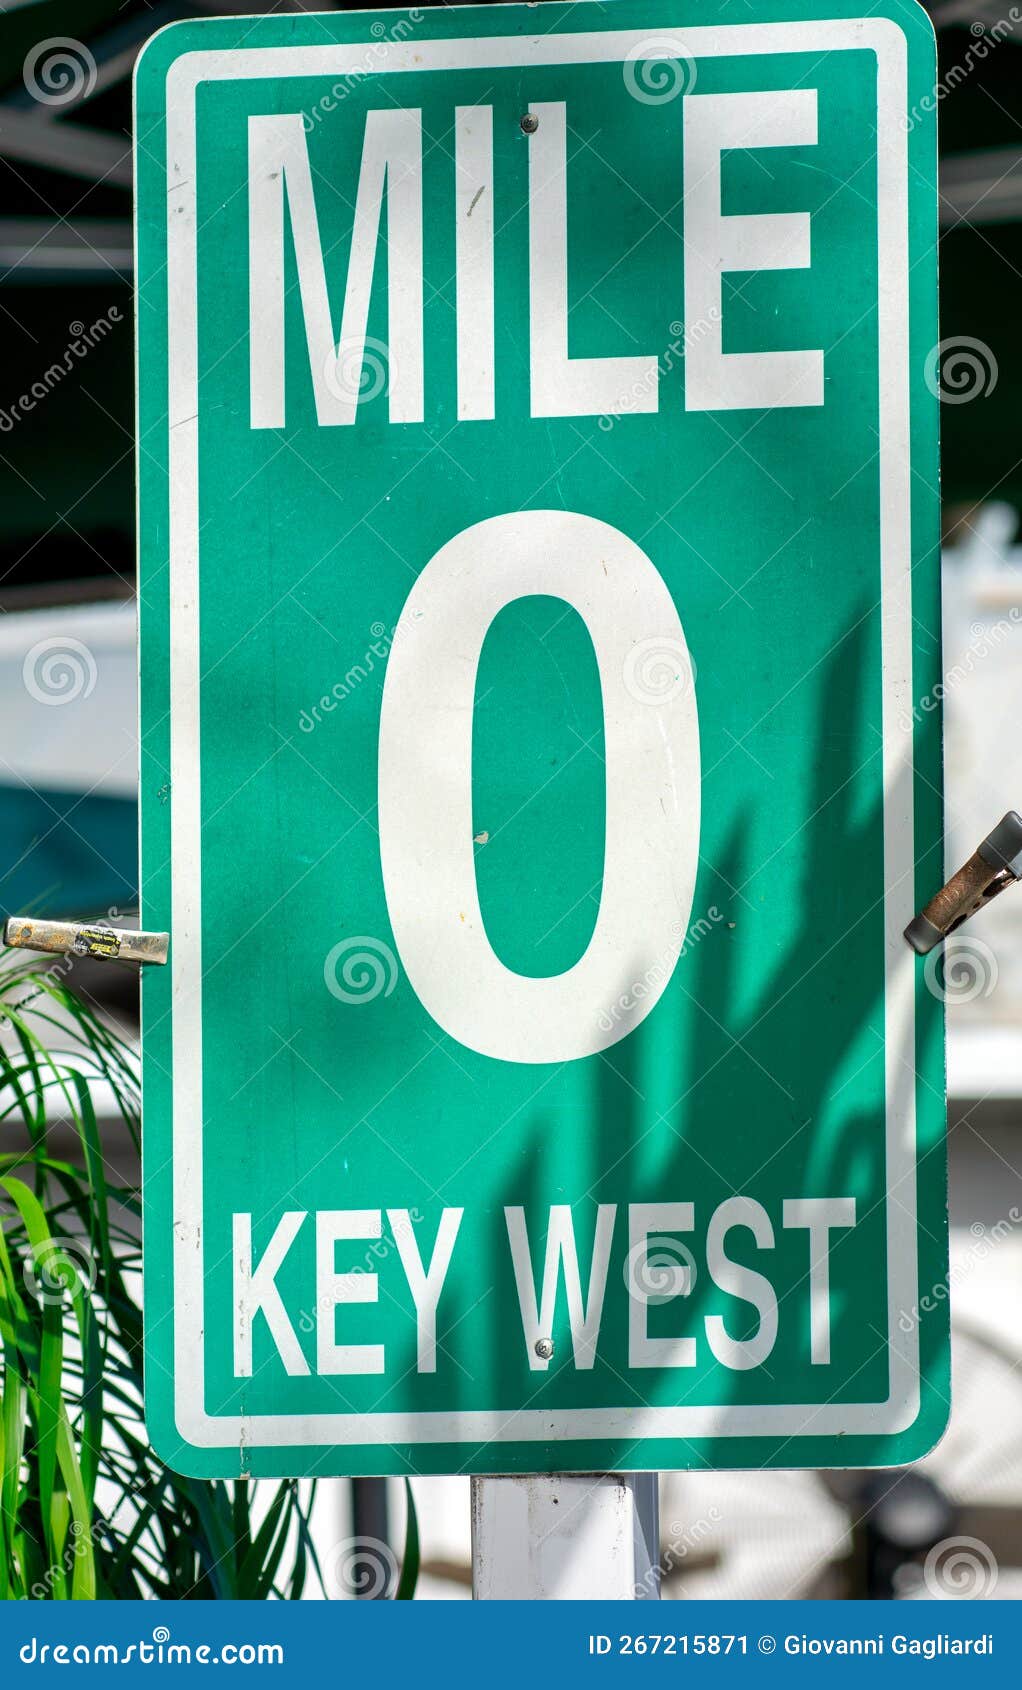 Mile 0 Street Signage in Key West, Florida Stock Image - Image of ...